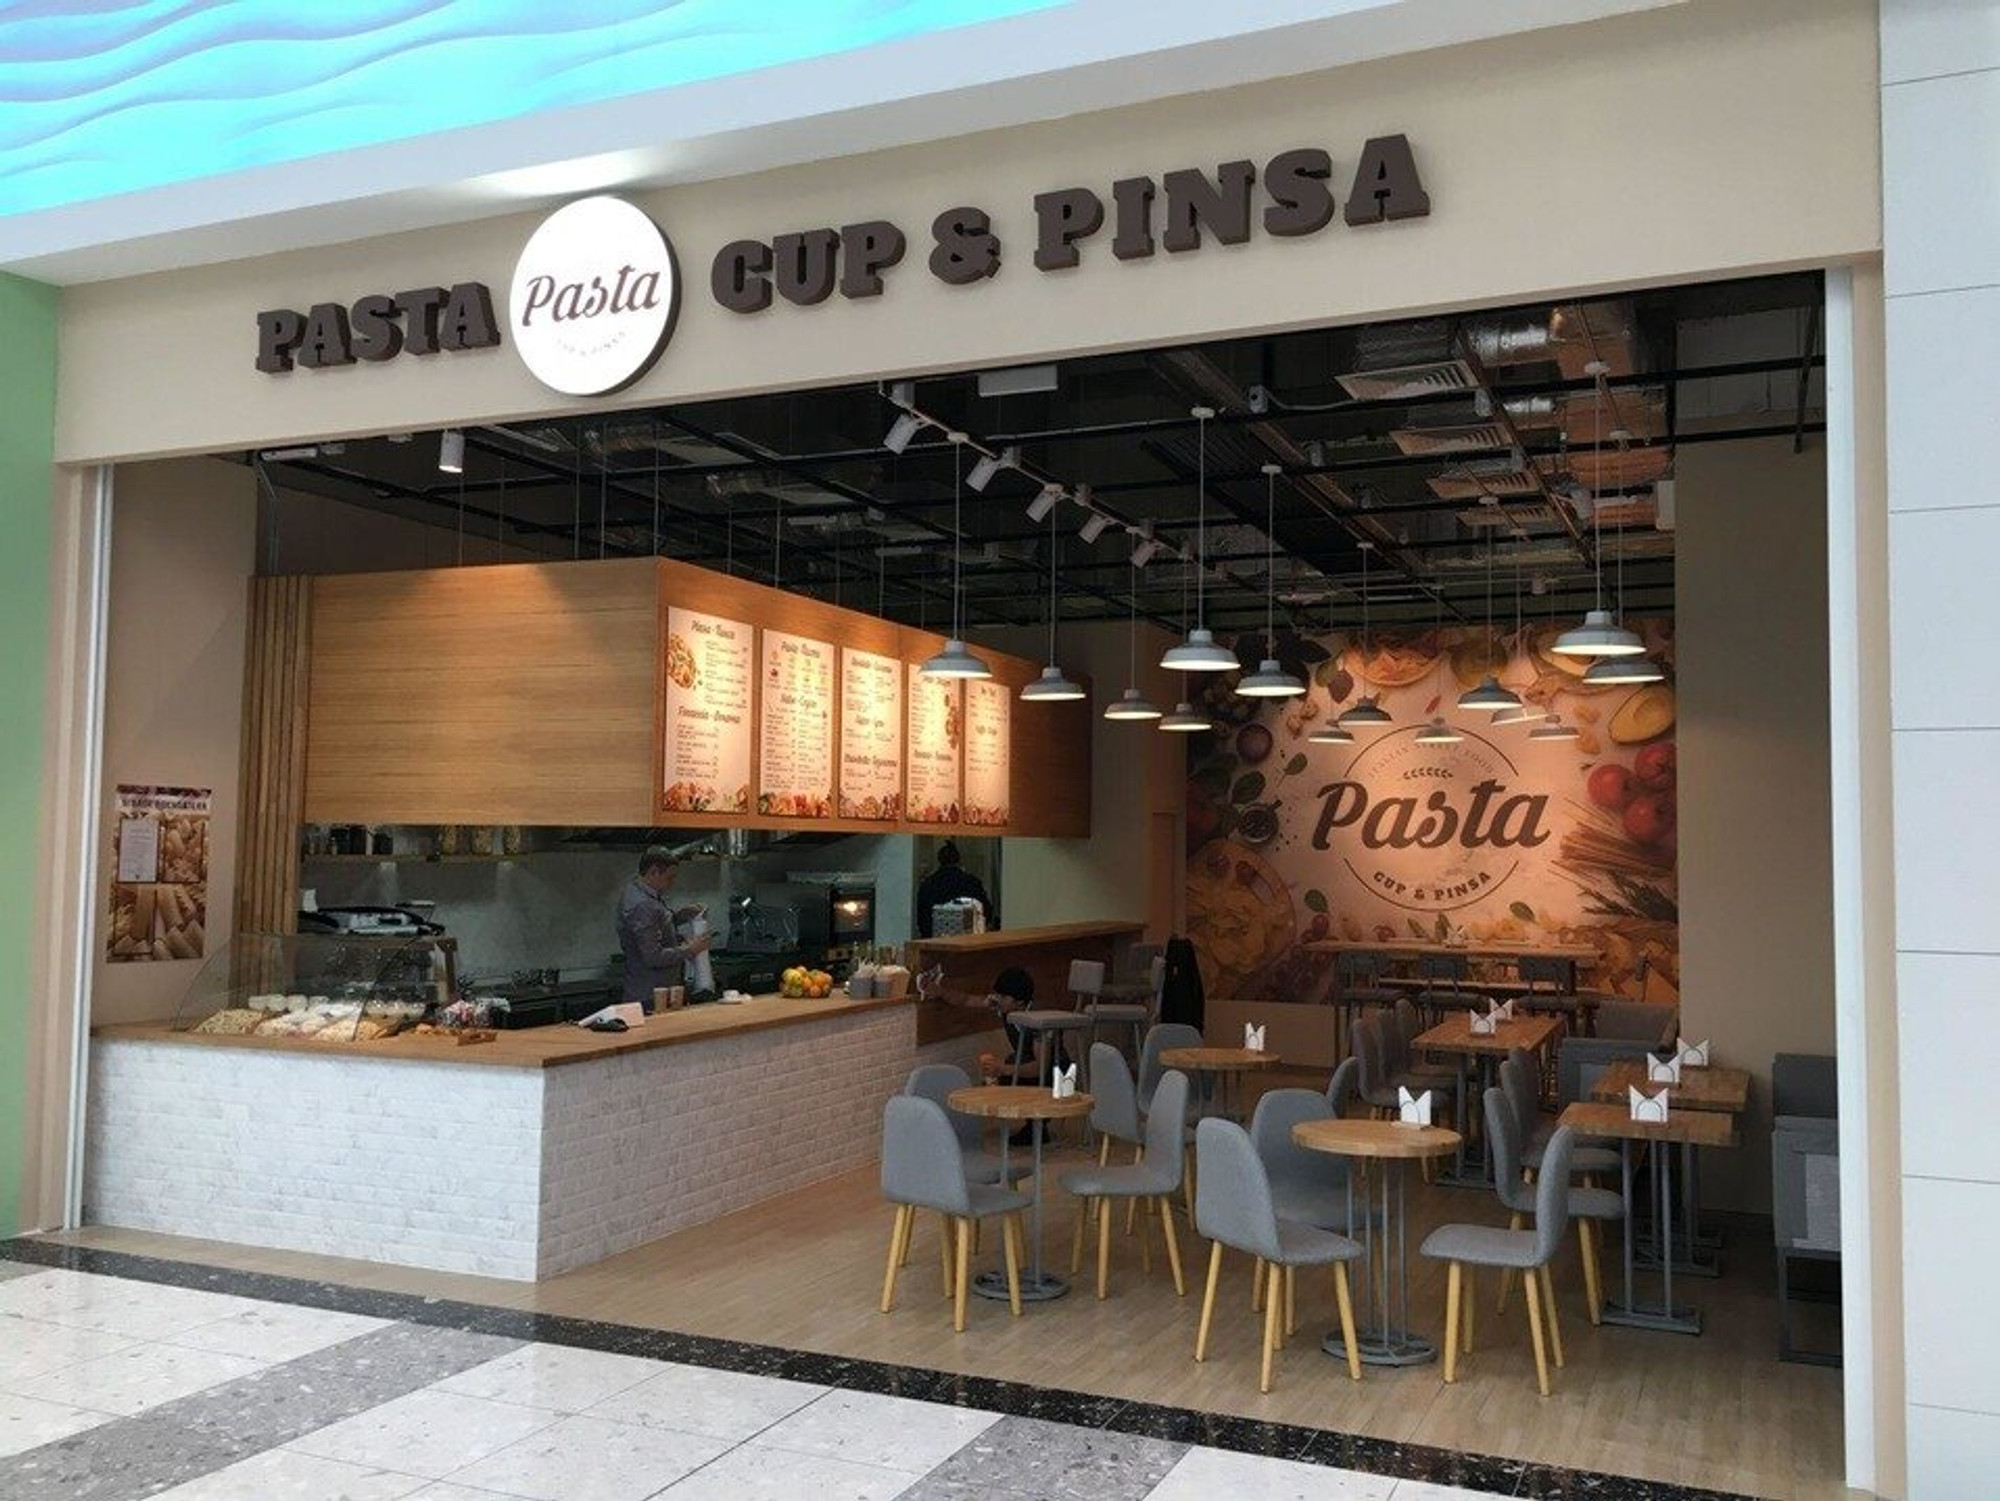 Pasta Cup & Pinsa (Ресторан )